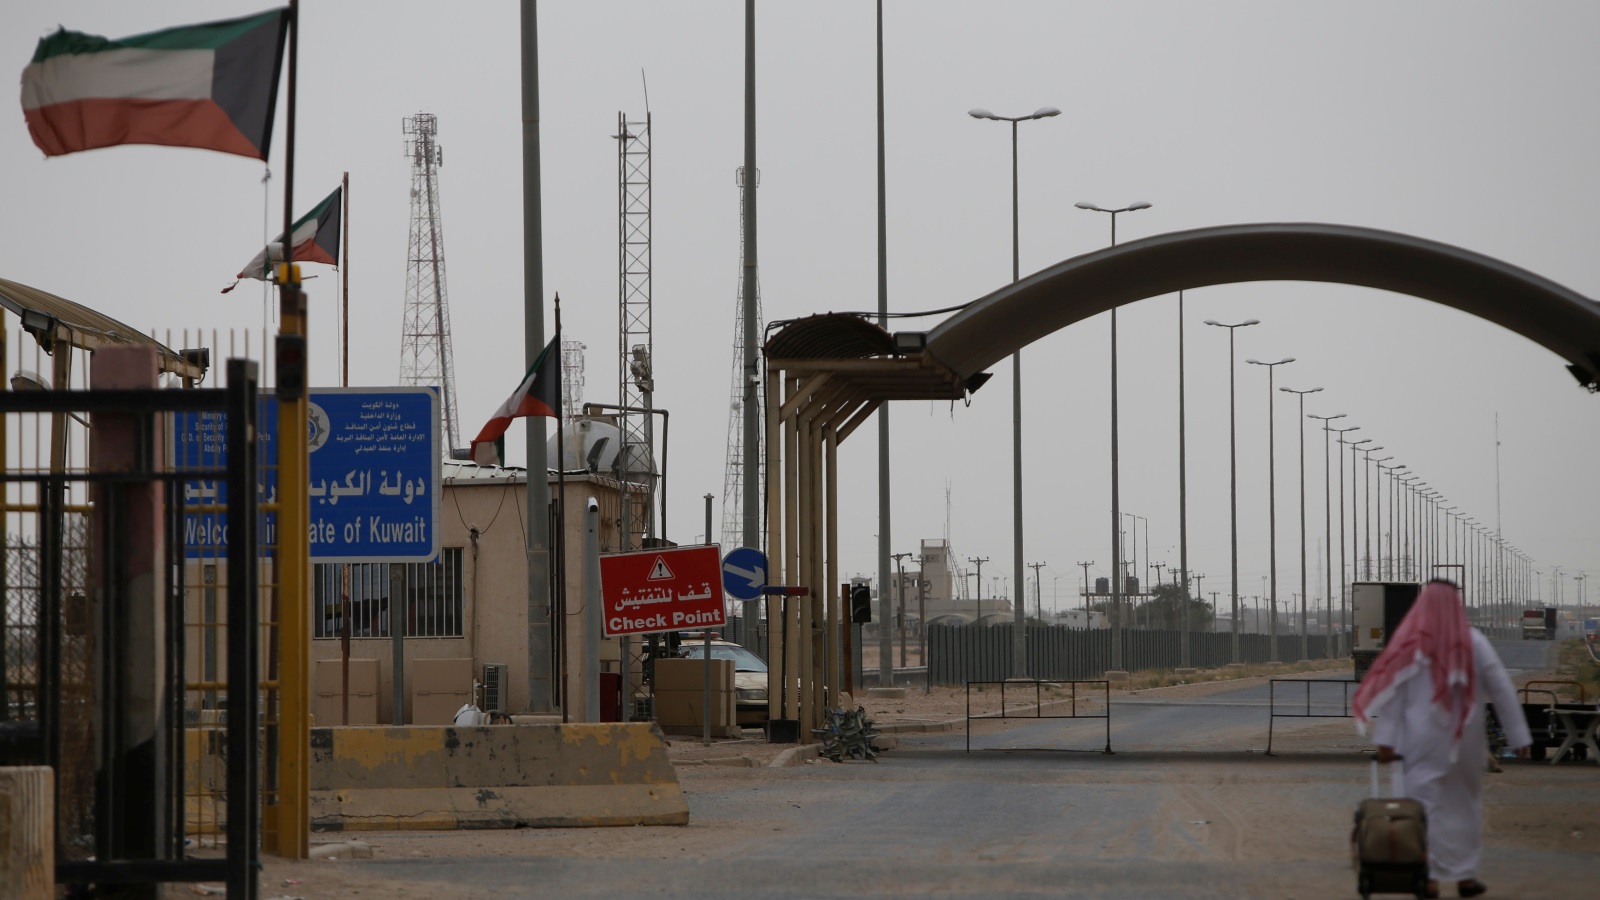 تشهد الحدود العراقية الكويتية توتراً على فترات متفاوتة لدرجة أن الكويت اتخذت إجراءات أمن مشددة جداً على امتداد الشريط الحدودي، كما أقامت الكويت منفذاً وحيداً لعبور المدنيين والبضائع للعراق